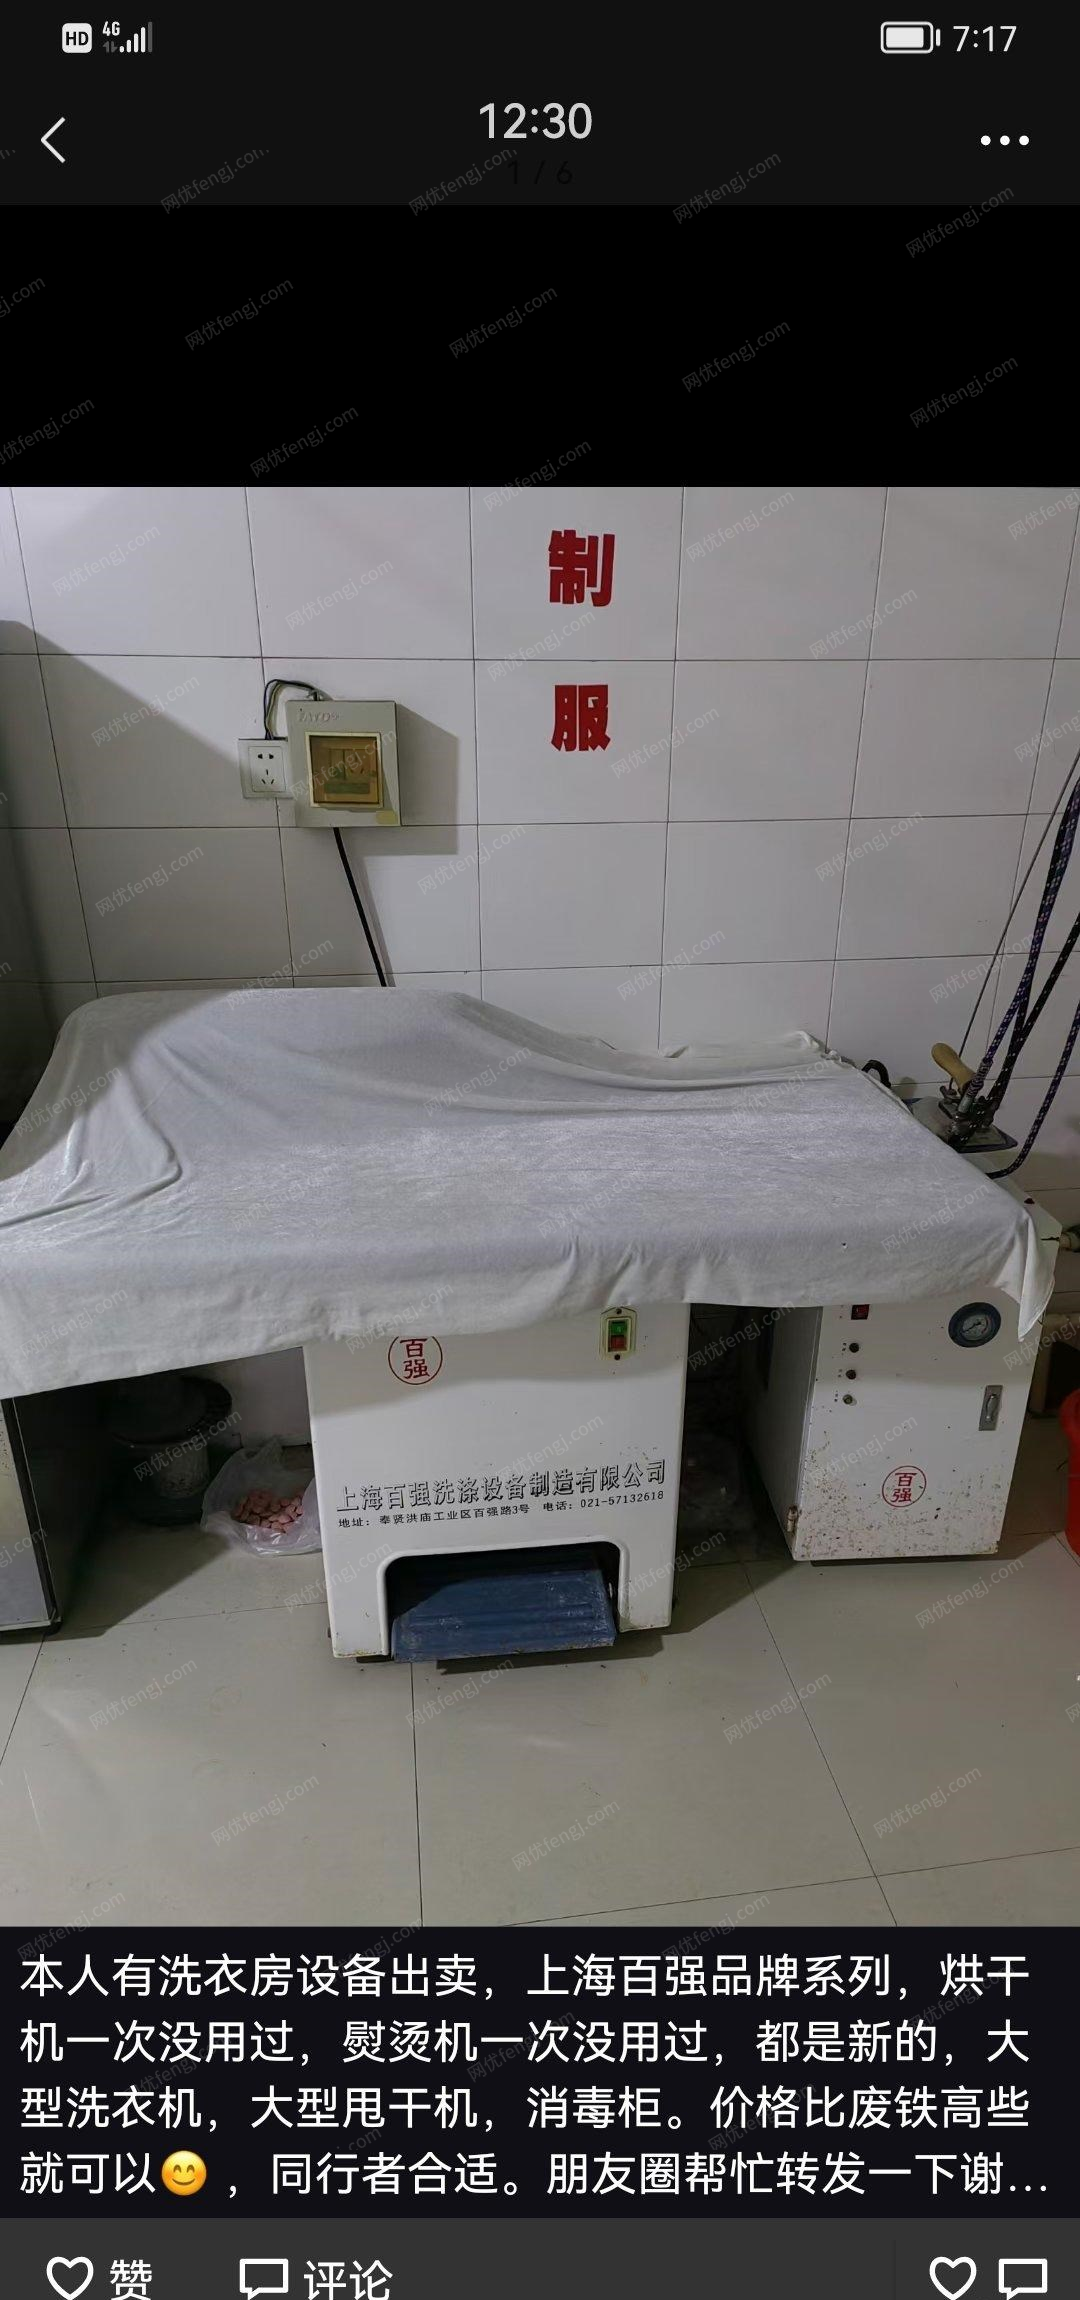 黑龙江哈尔滨自己洗衣店不做啦出售洗衣设备